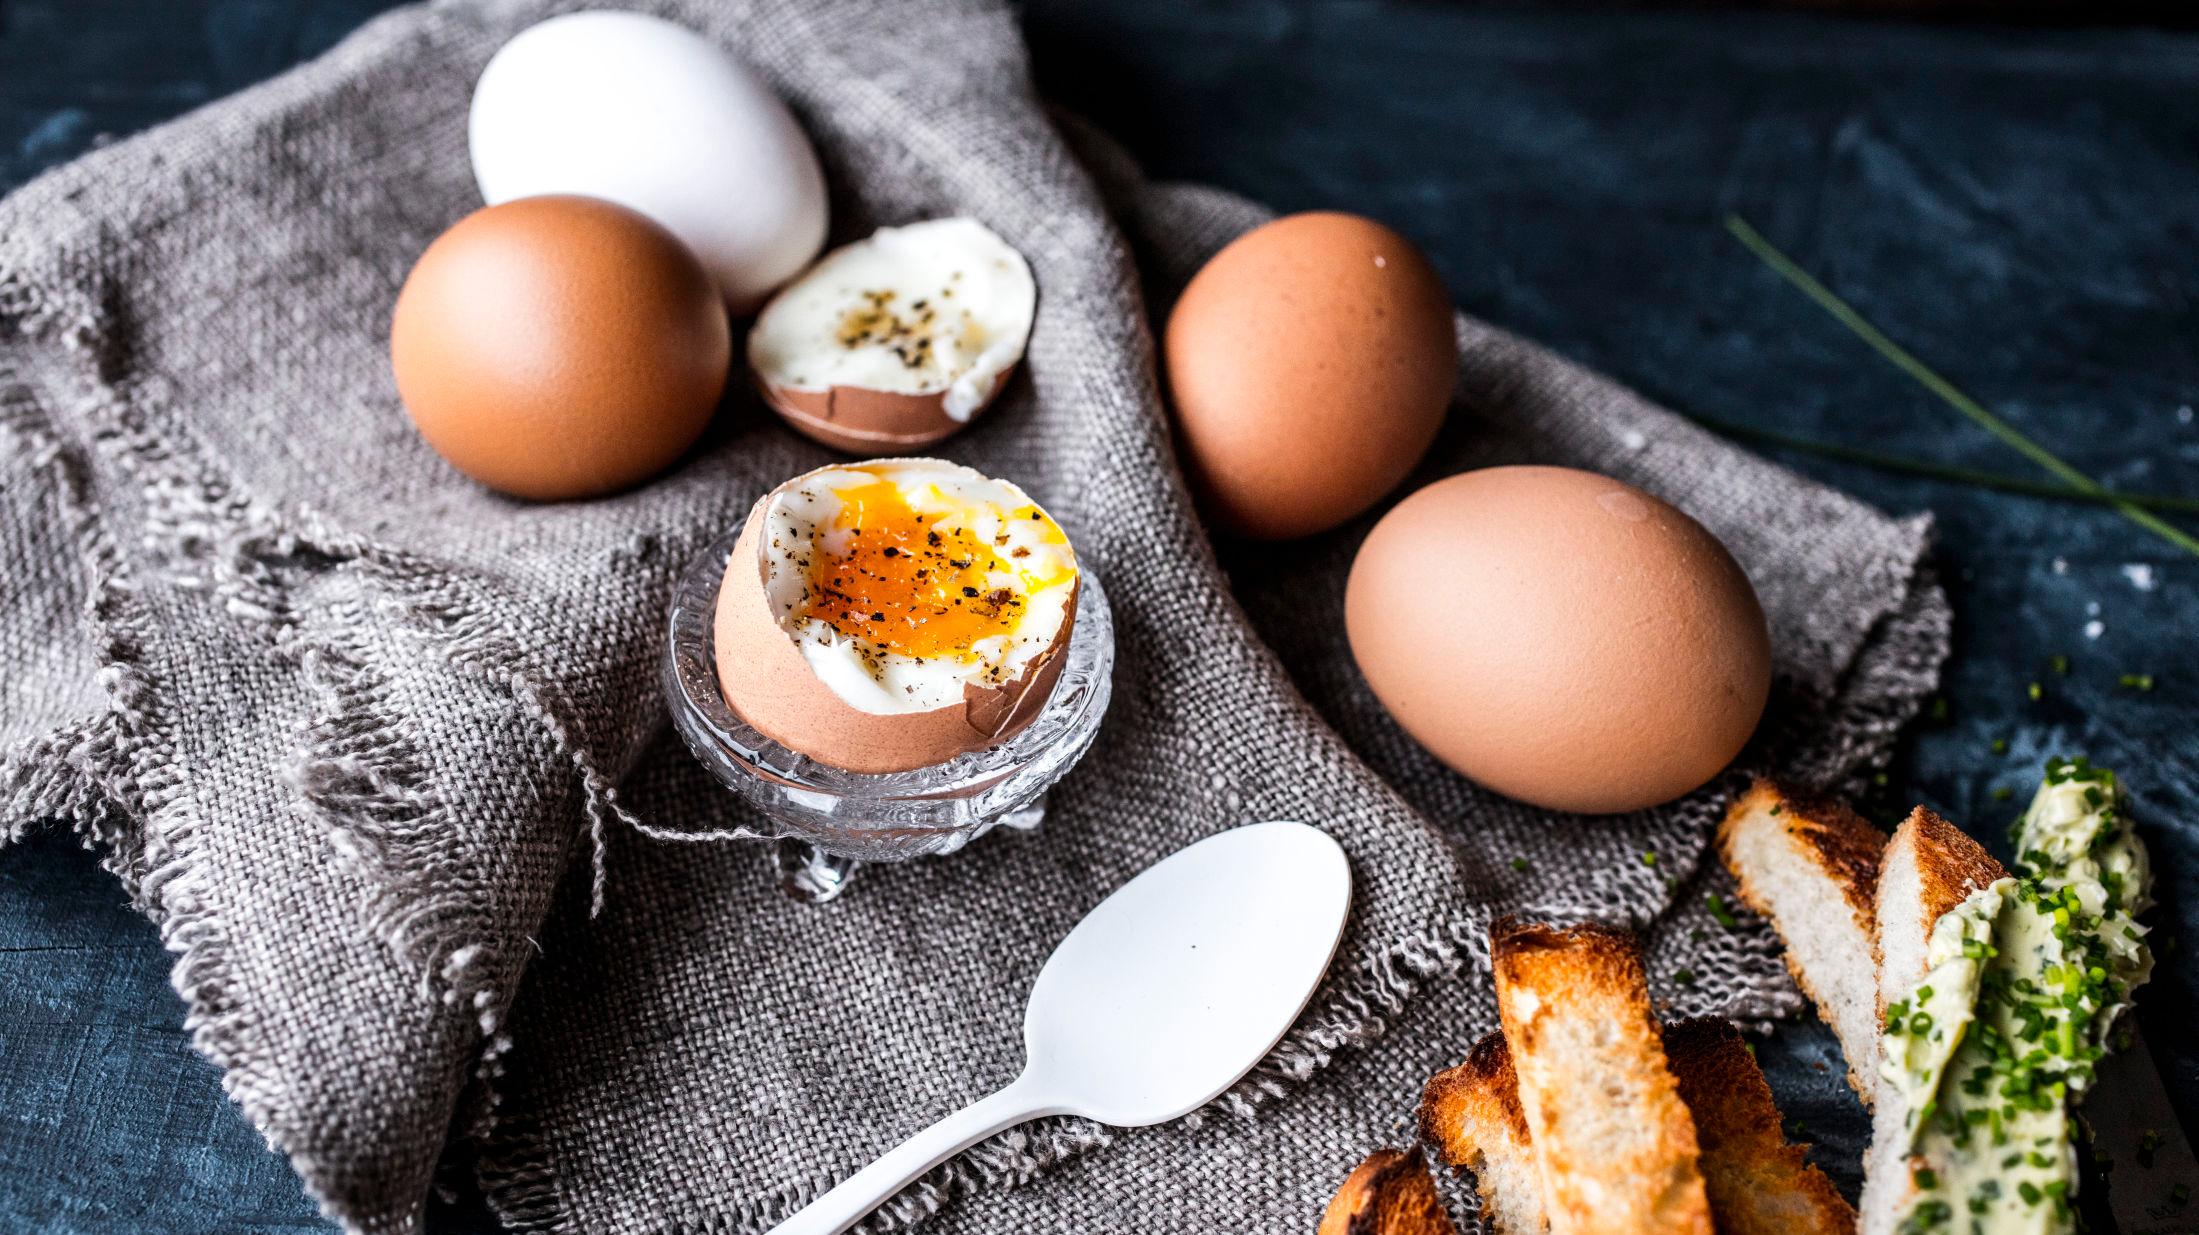 NUMMER ÉN: Frokostegg i eggeglass er den mest populære eggeretten i påsken. Foto: Sara Johannessen/VG